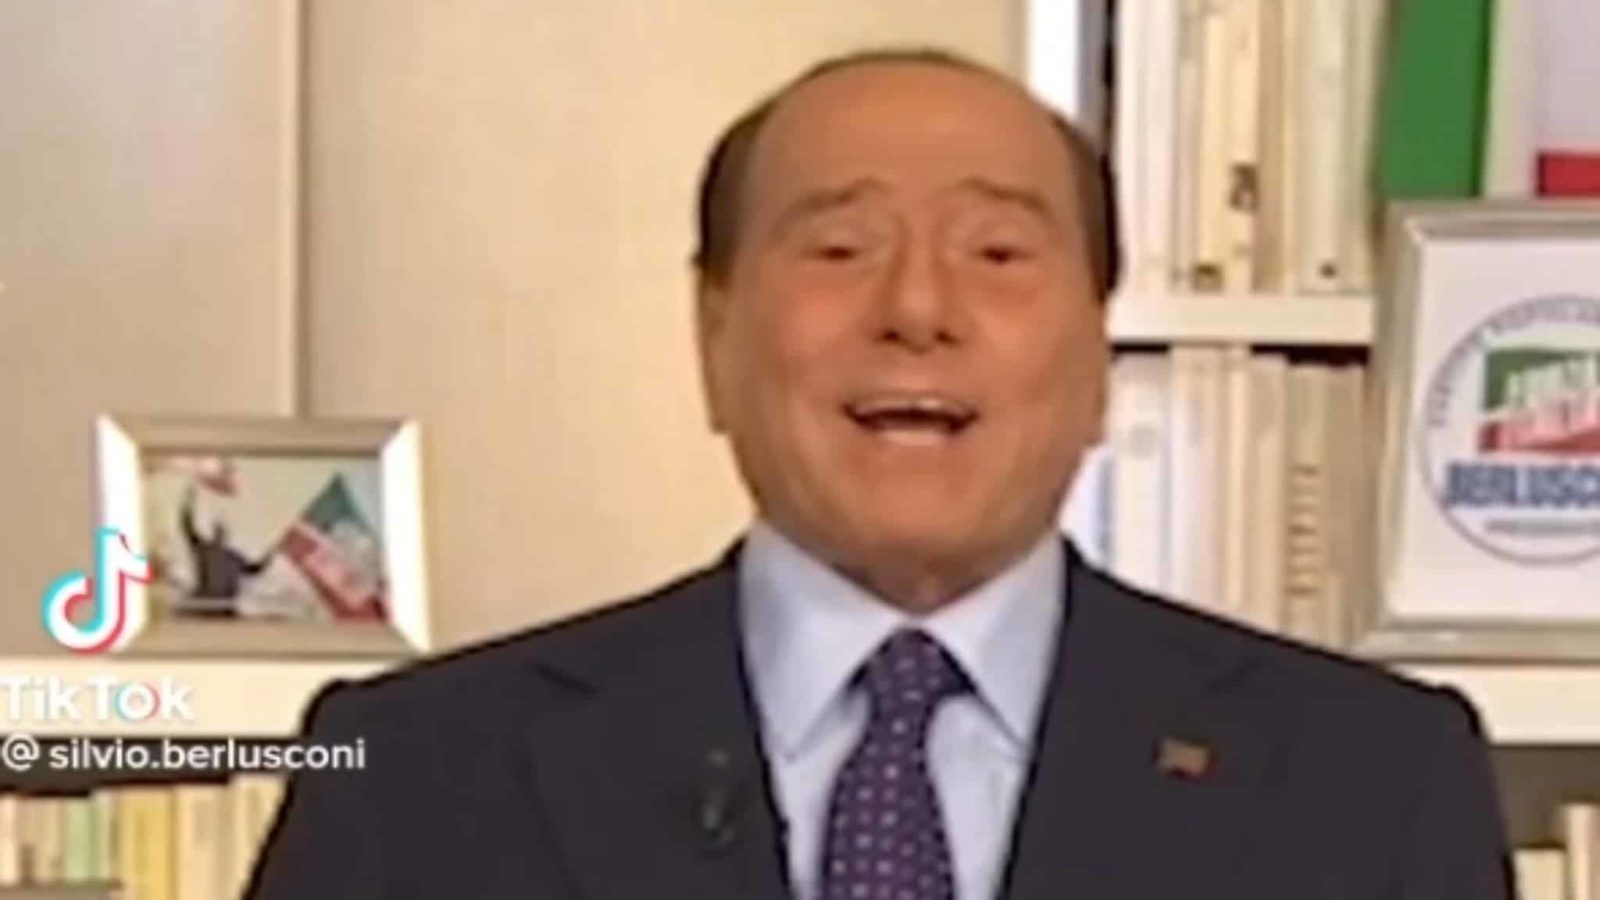 TikTok! Chi è? Berlusconi e Renzi. Bestiario elettorale on-line